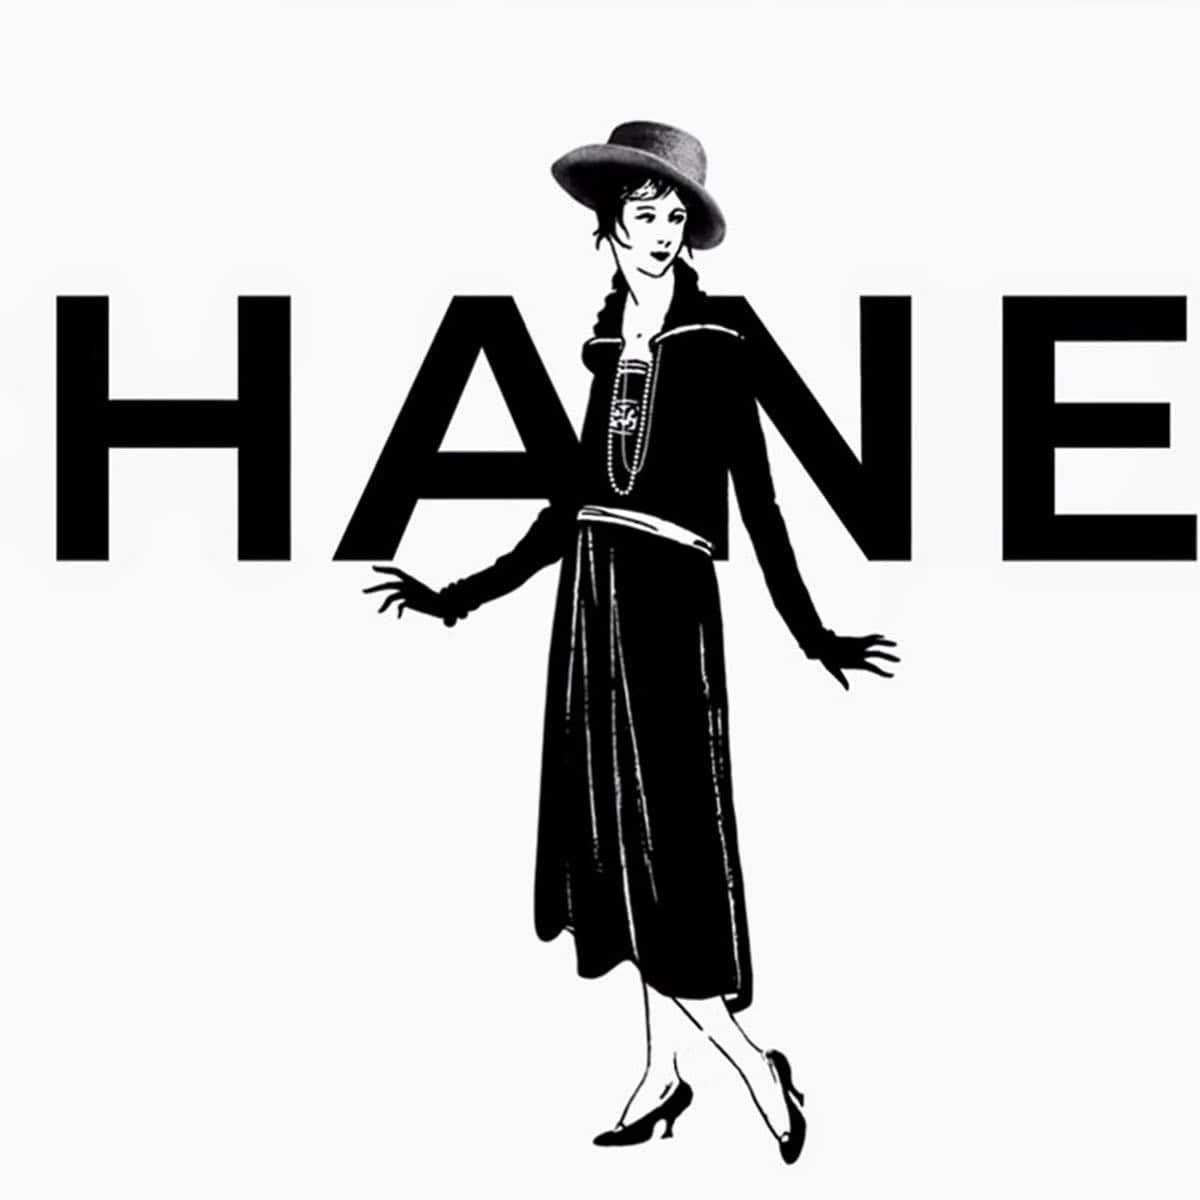 La storia dell'antica casa di Chanel